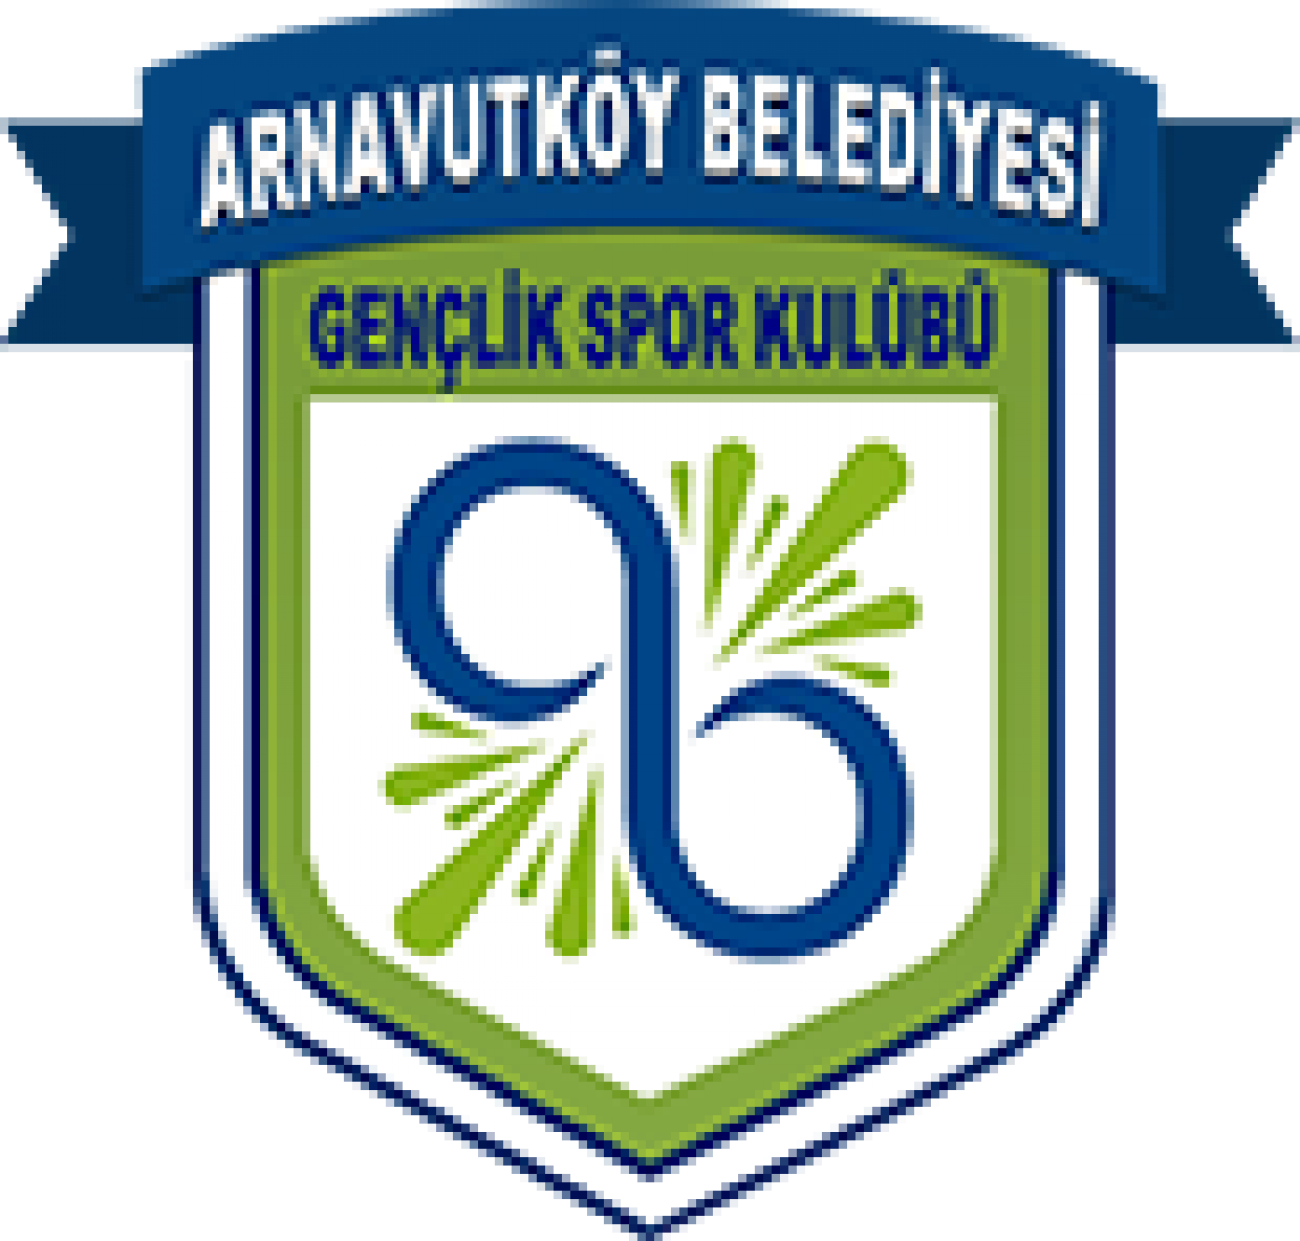 Arnavutköy Belediye Spor